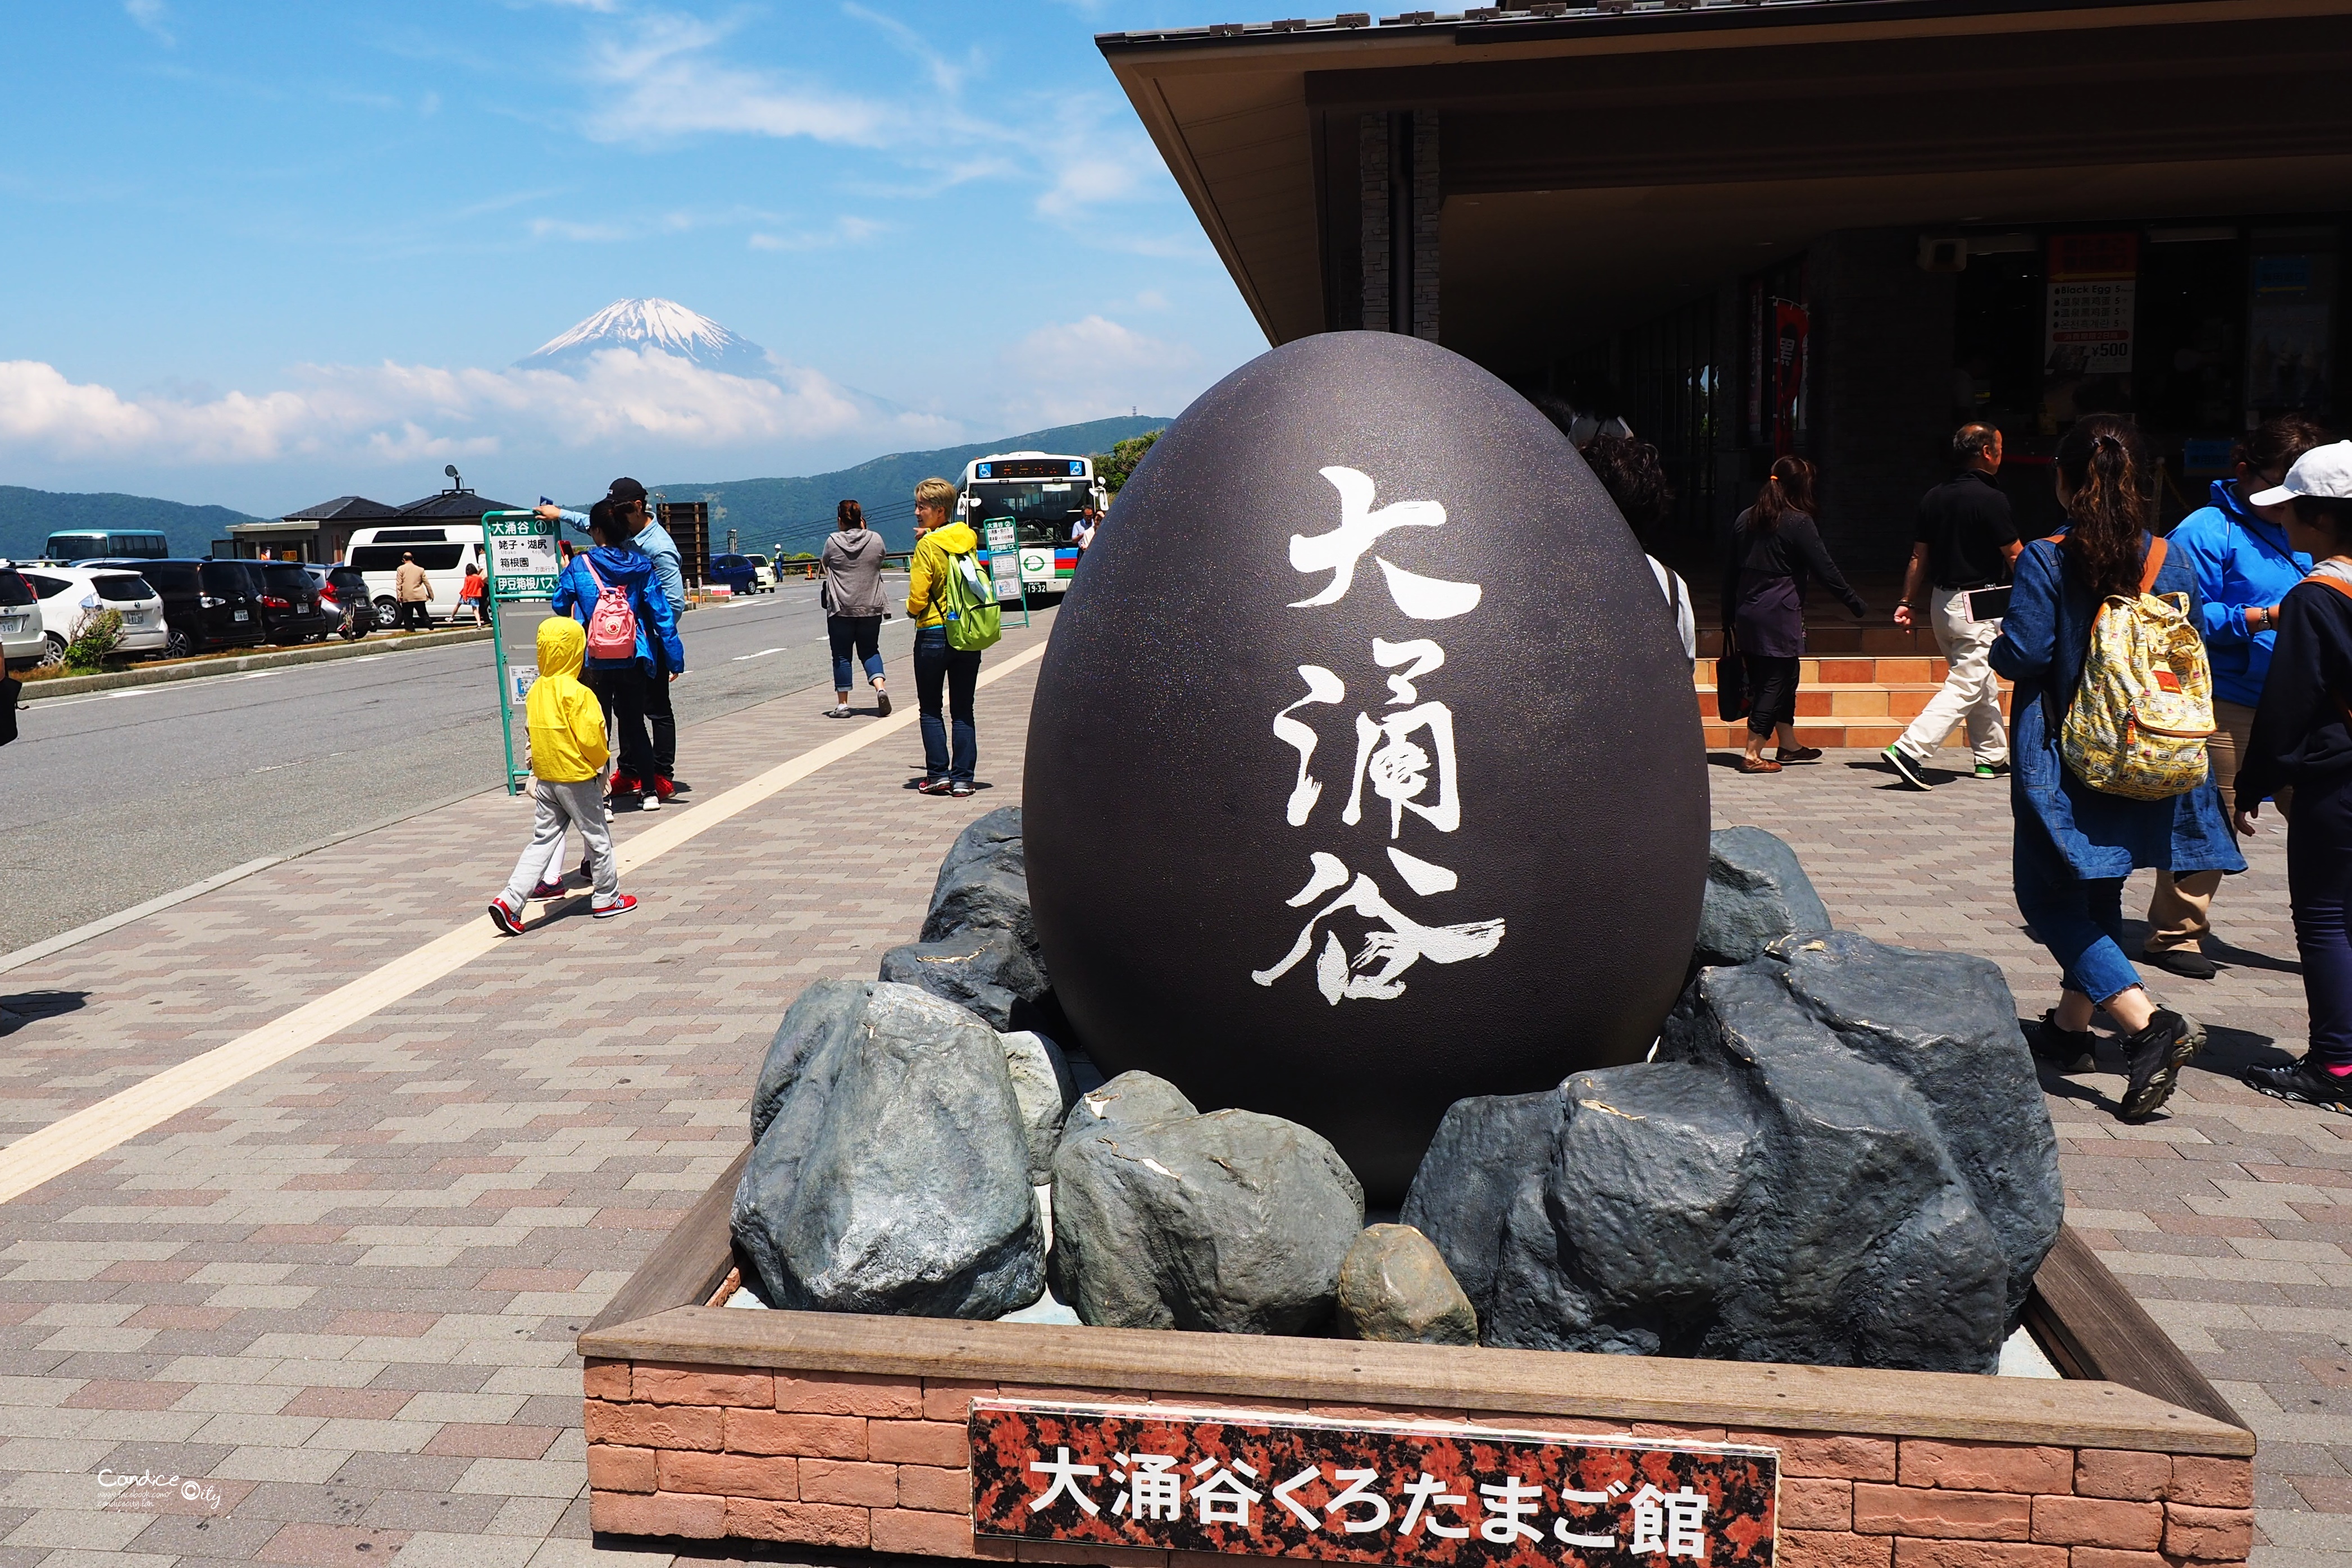 箱根景點 大涌谷 箱根必去景點 富士山超美 陳小沁の吃喝玩樂